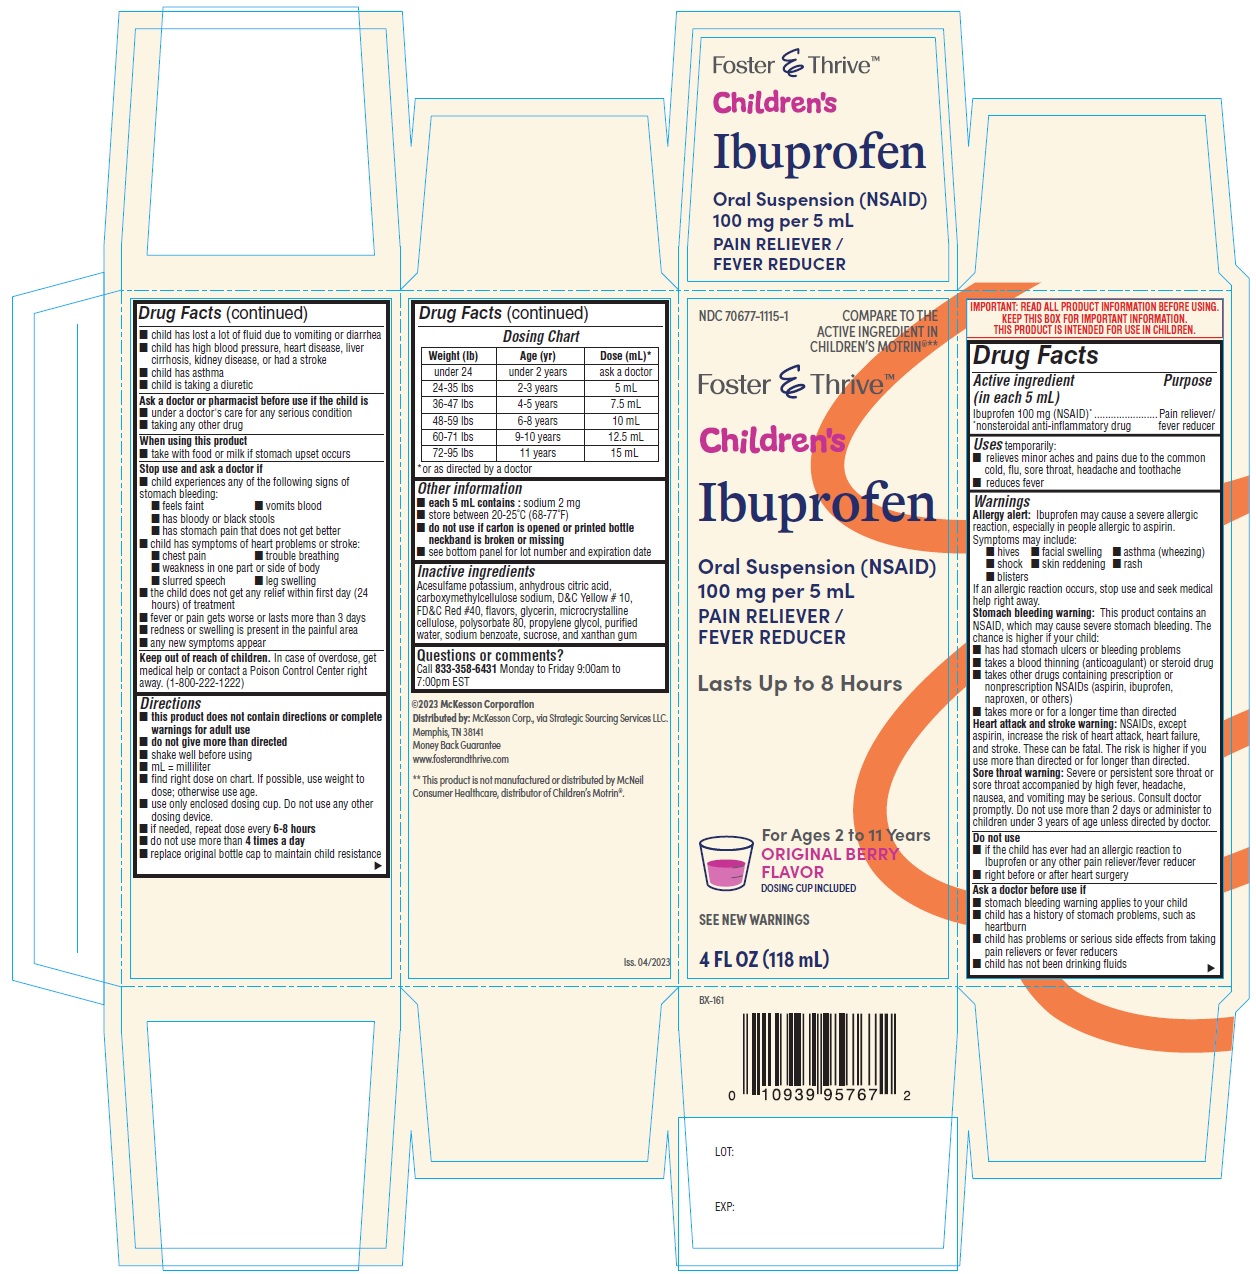 ibuprofen-oral-suspension-berry-flavor-container-carton